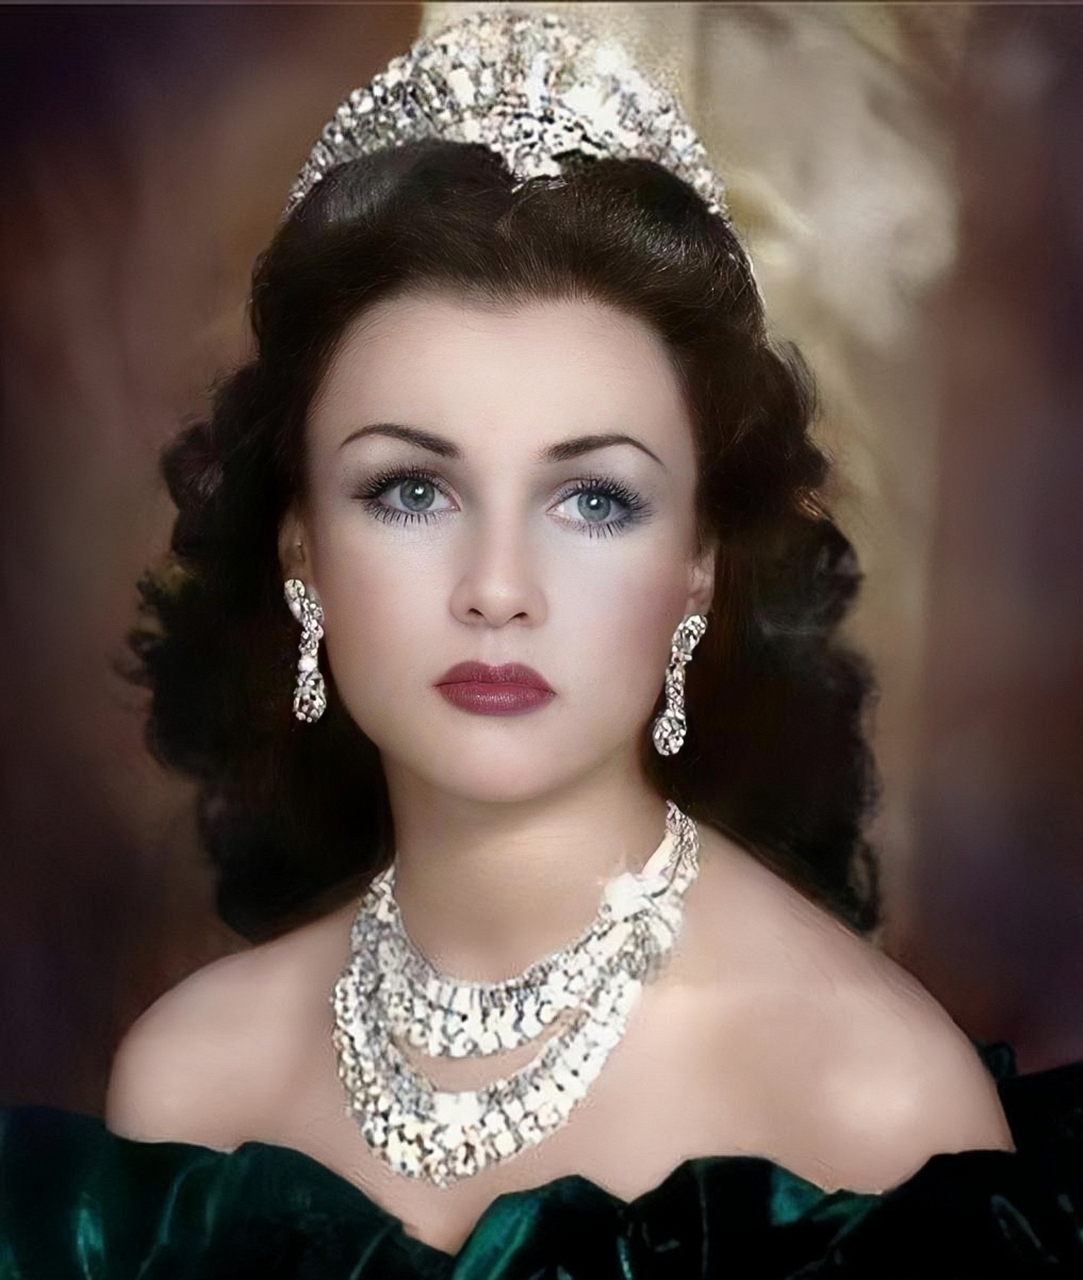 法丝亚曾是埃及最美的公主,也是伊朗末代国王巴列维的前妻